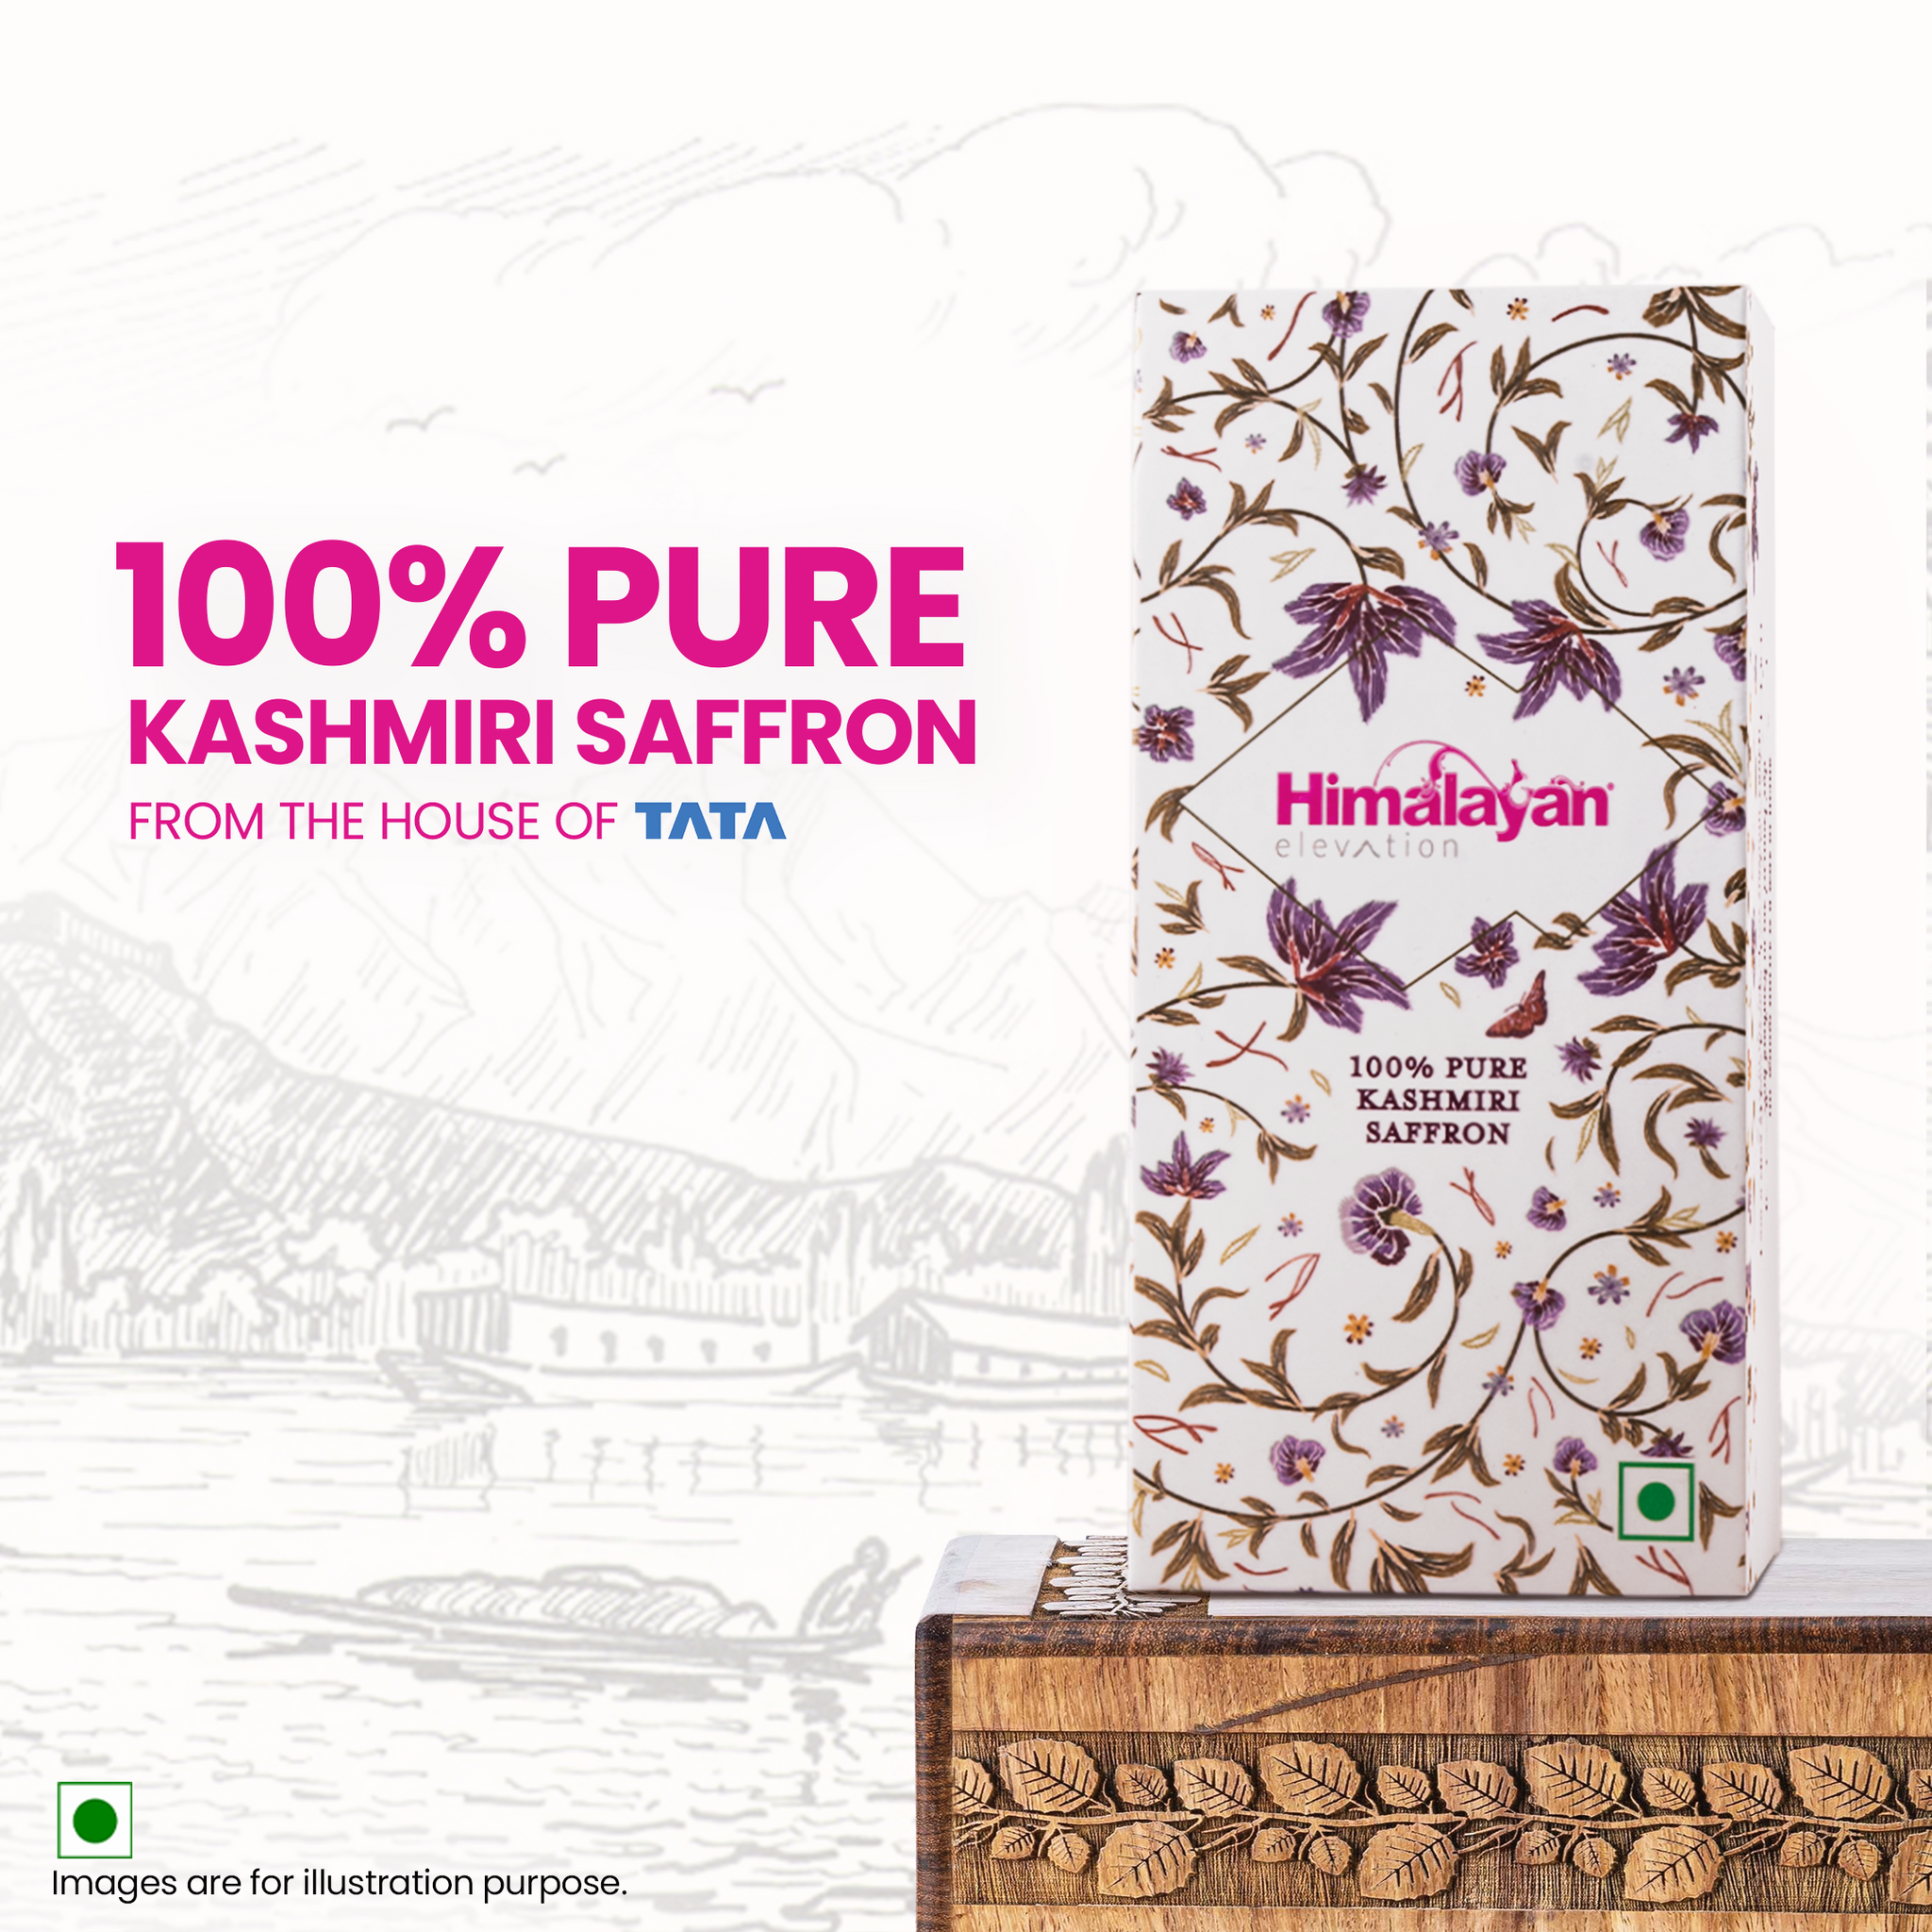 K&M x Himalayan Elevation 100% Pure Kashmiri Saffron - Gifting Edition | Grade 1 Kashmiri Kesar | 1 g